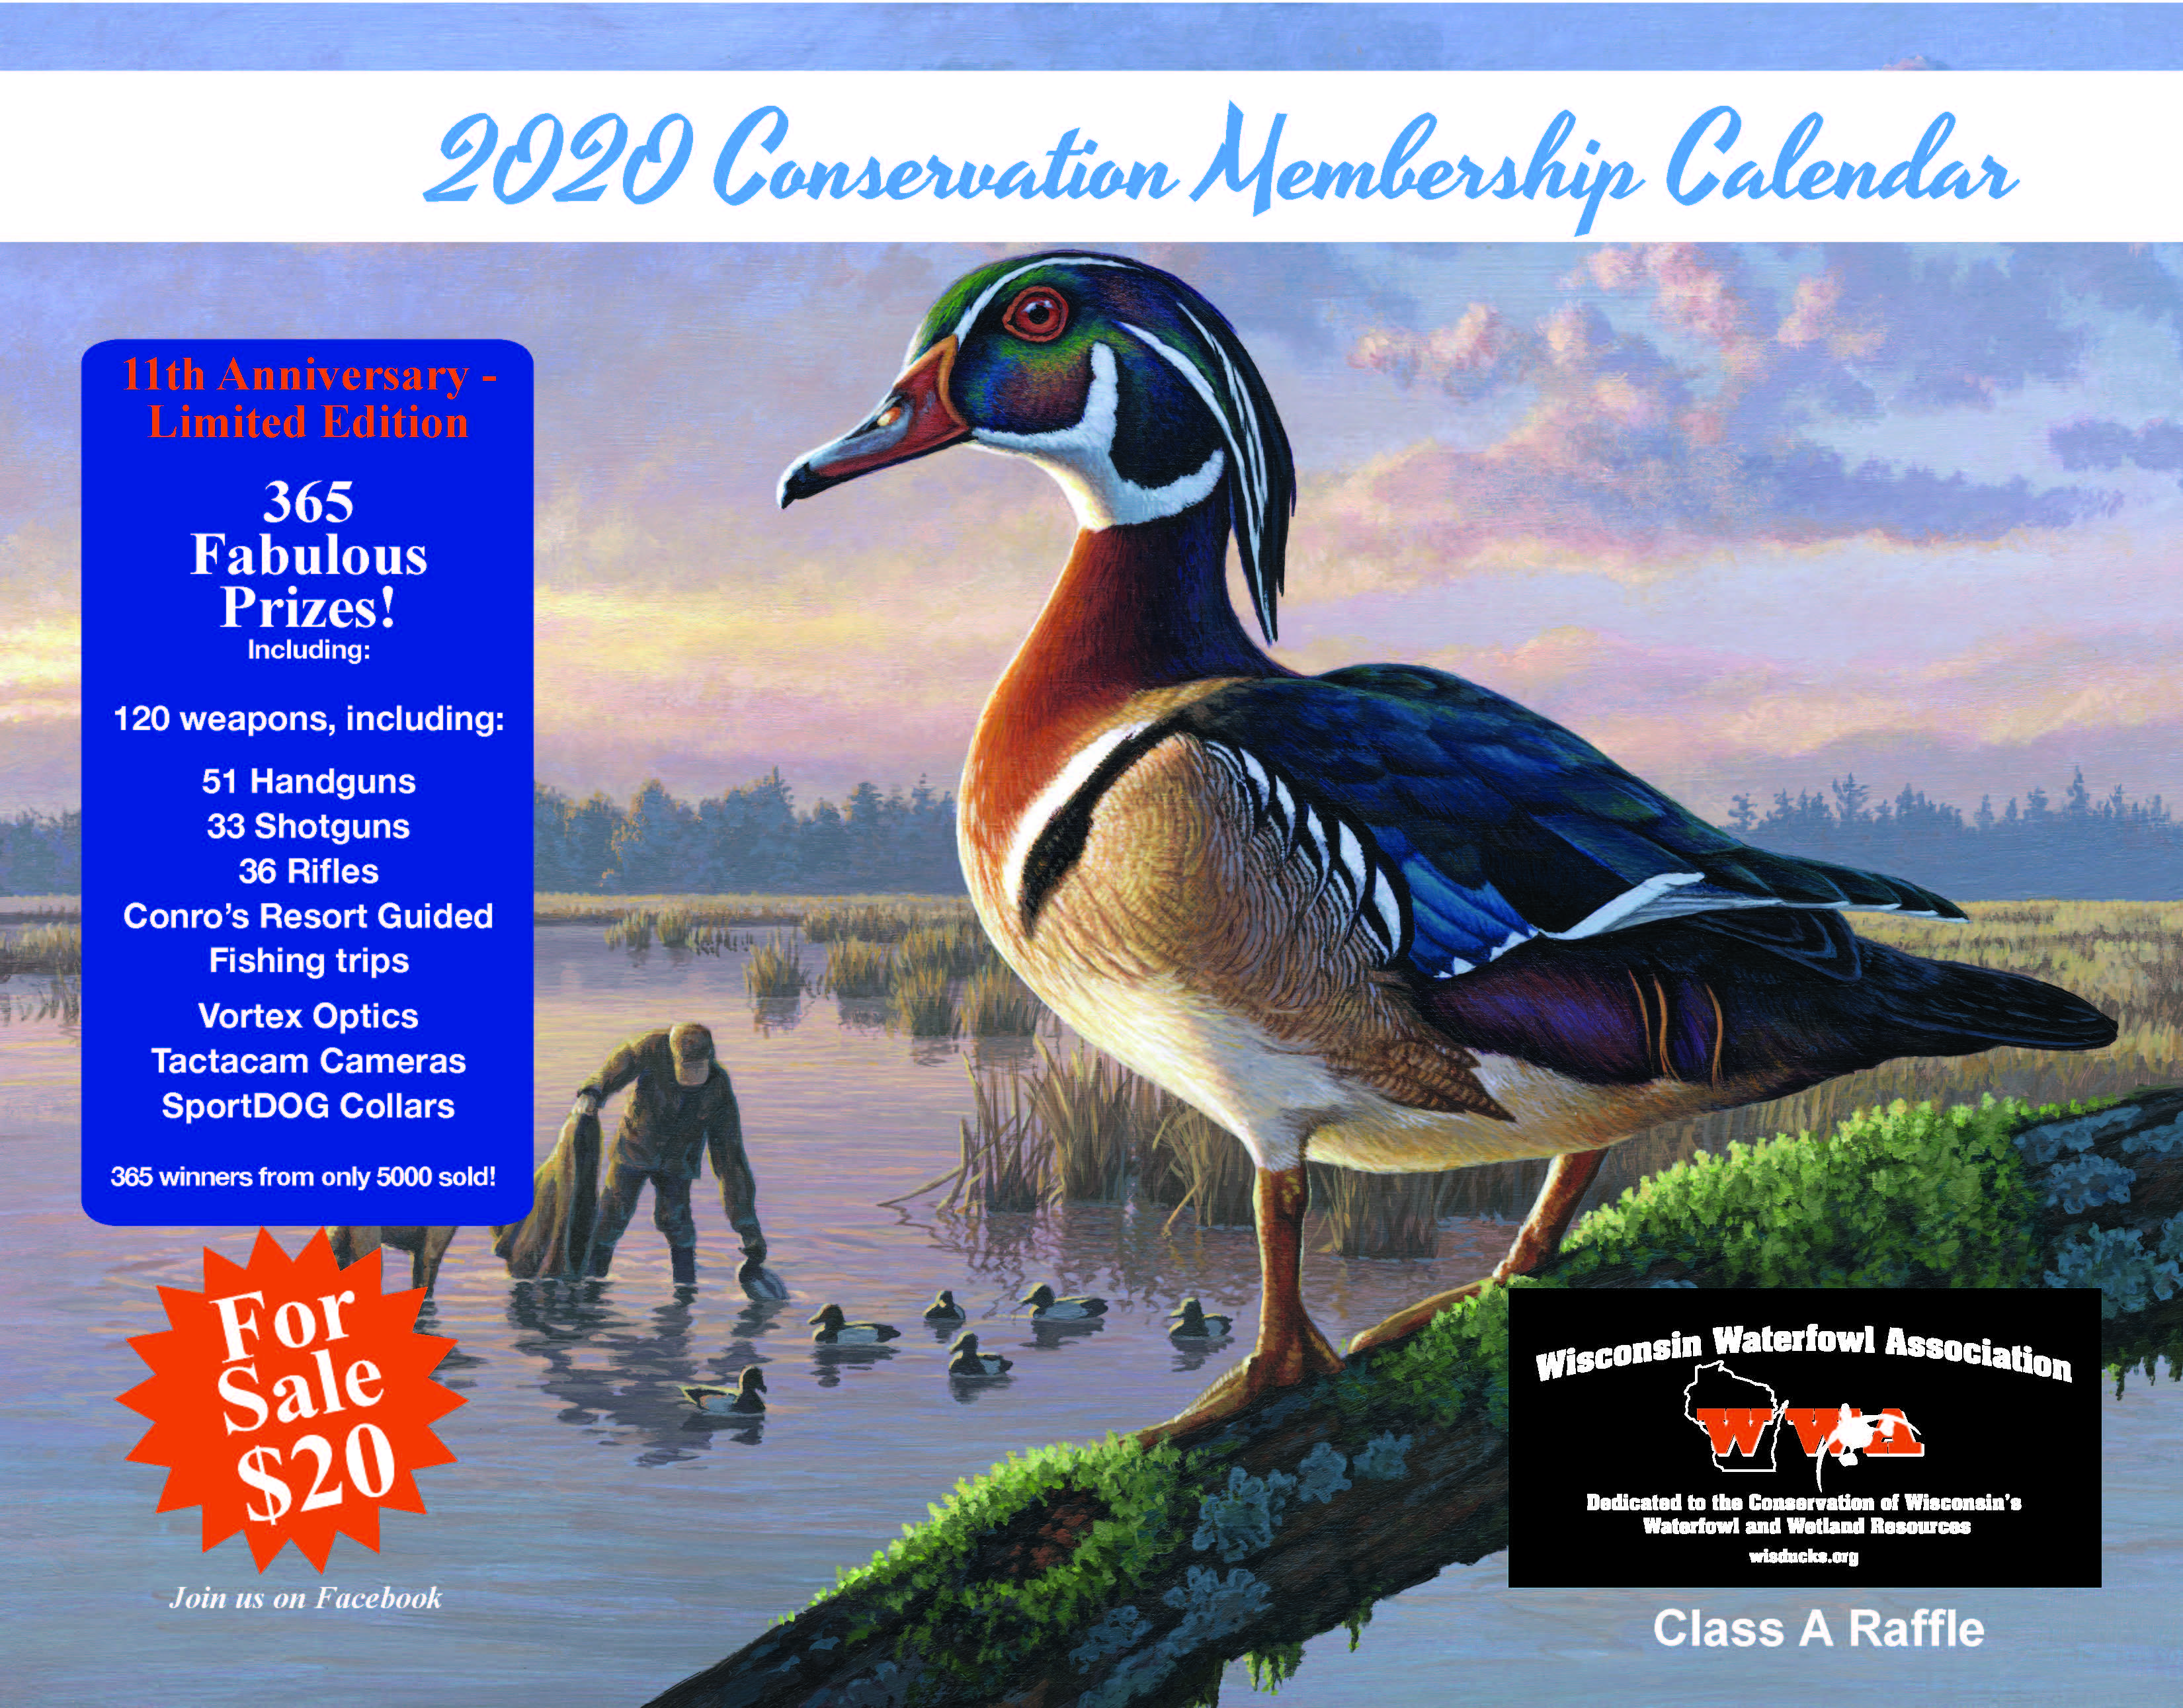 2022 Wisconsin Ducks Unlimited Calendar Raffle Winners